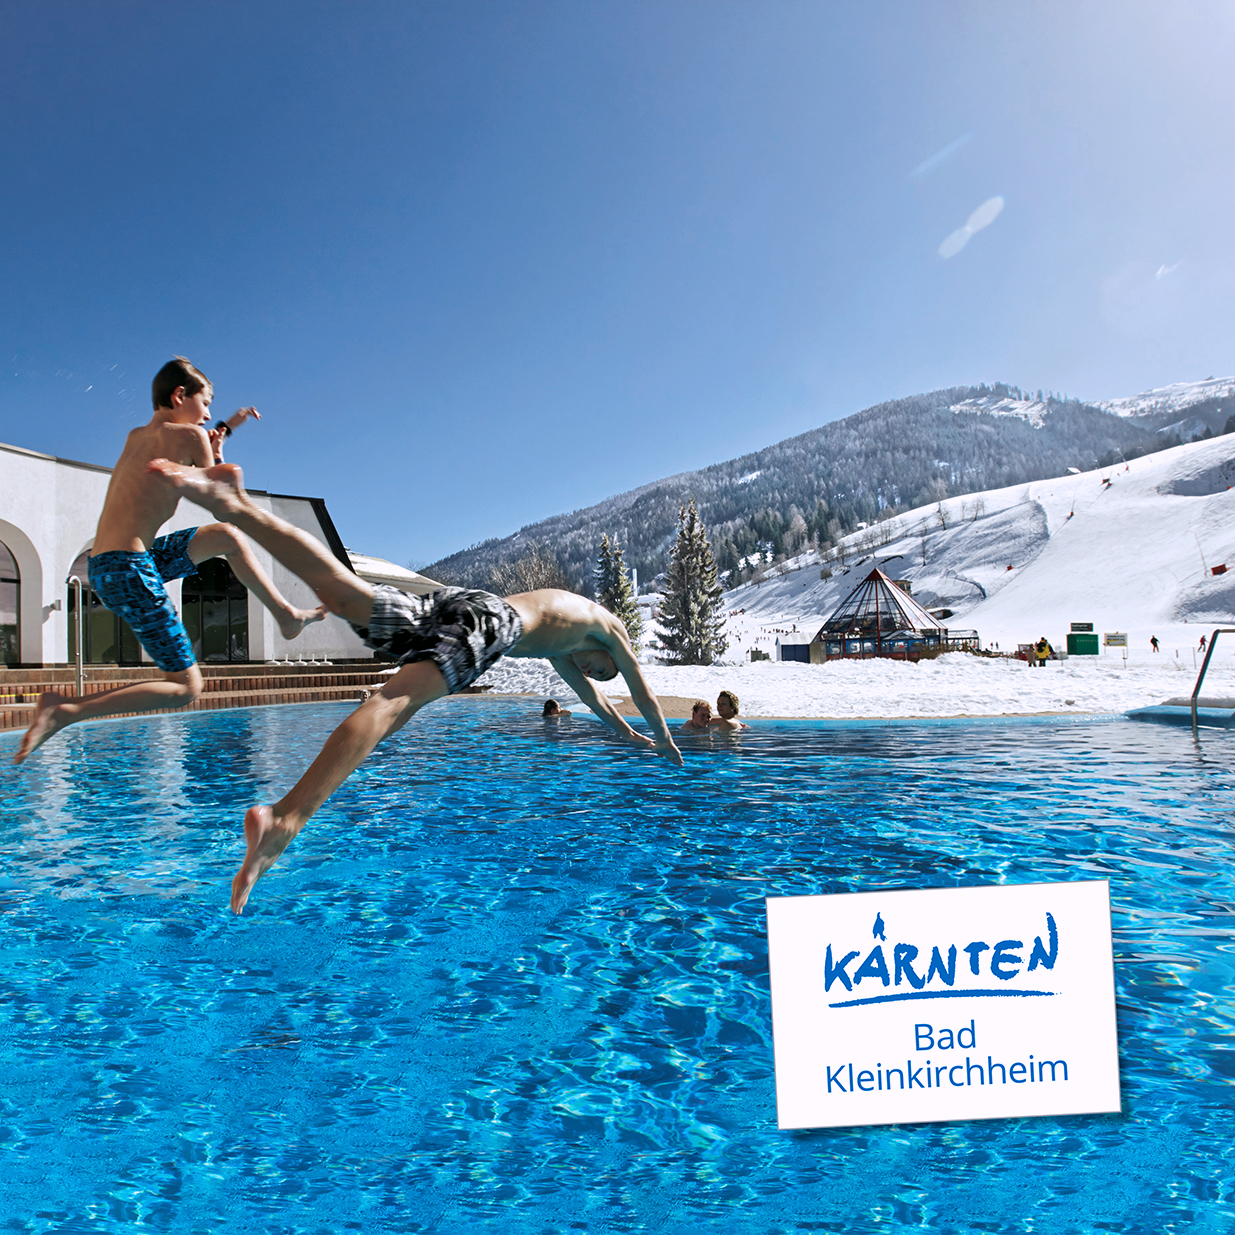 Ski-Thermen-Wochen: Sonnenskilauf mit Thermengenuss in Bad Kleinkirchheim. Winterurlaub auf der Sonnenseite der Alpen